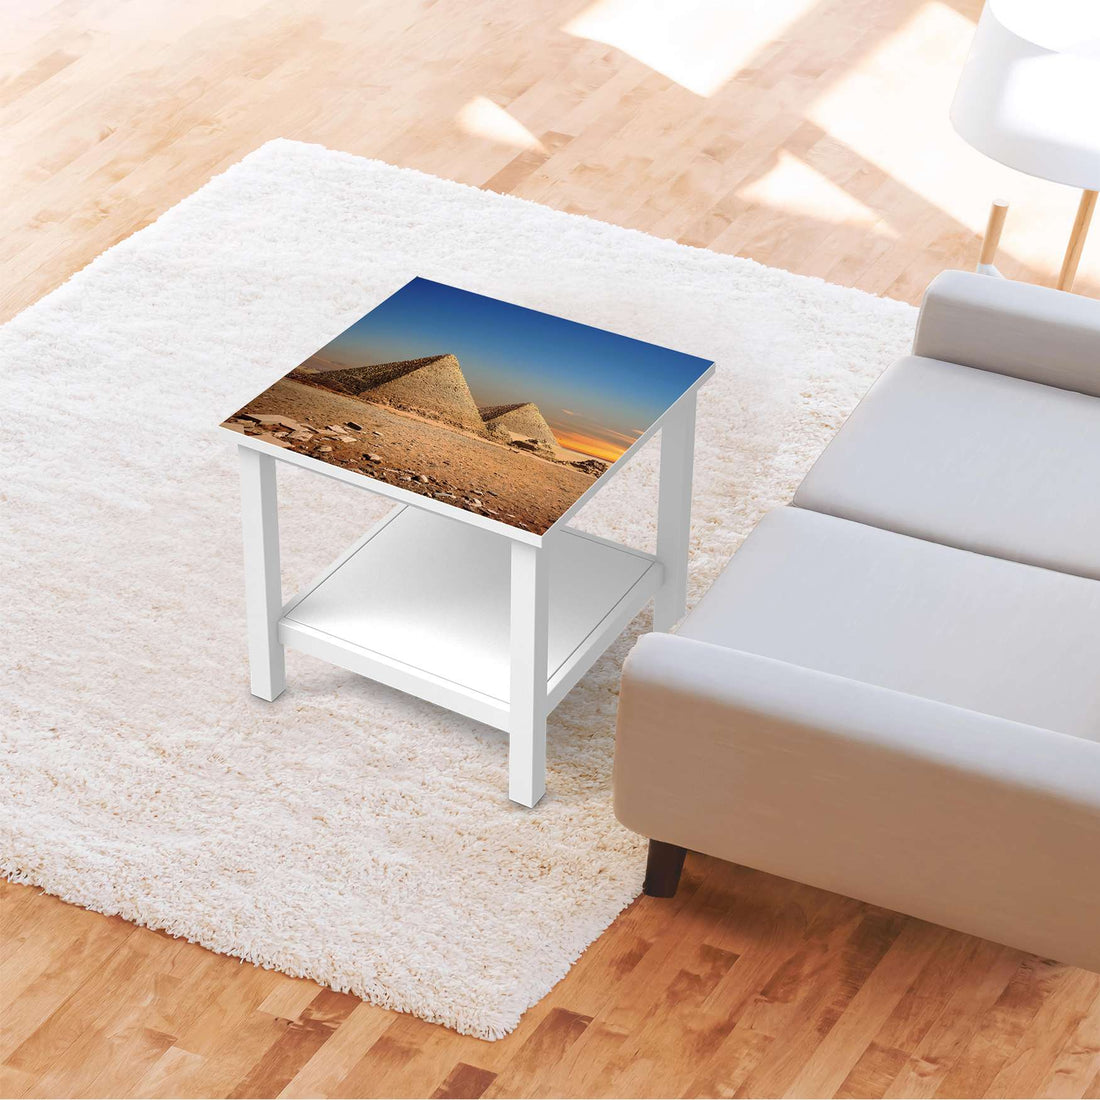 Möbel Klebefolie Pyramids - IKEA Hemnes Beistelltisch 55x55 cm - Wohnzimmer